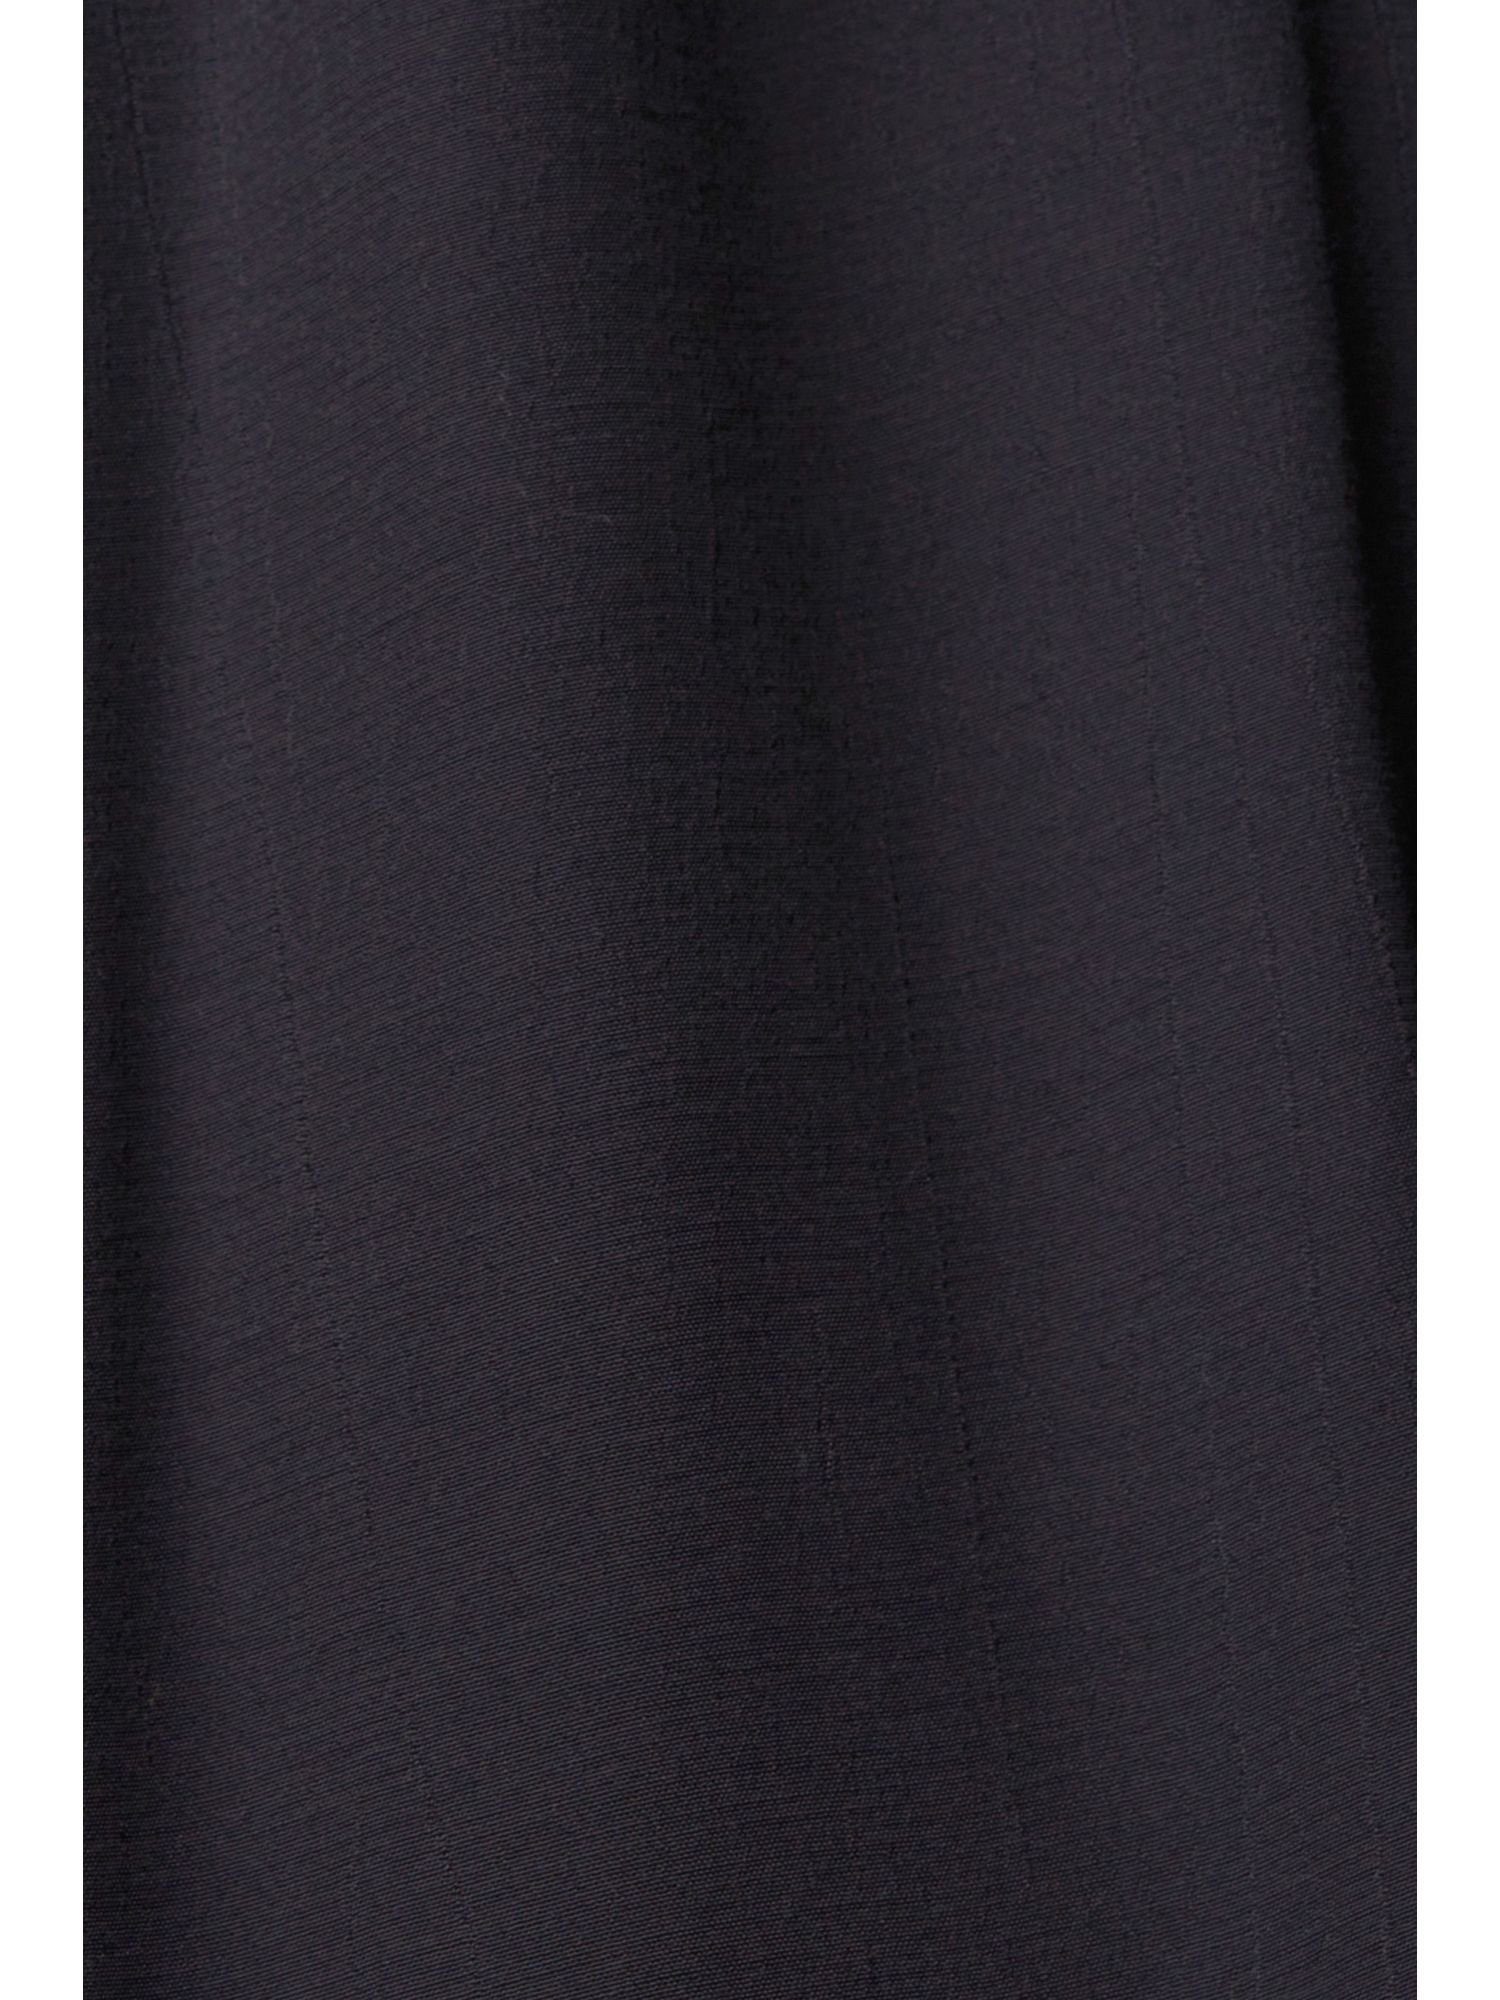 Esprit Spitzendetails BLACK edc by Minikleid Kleid mit